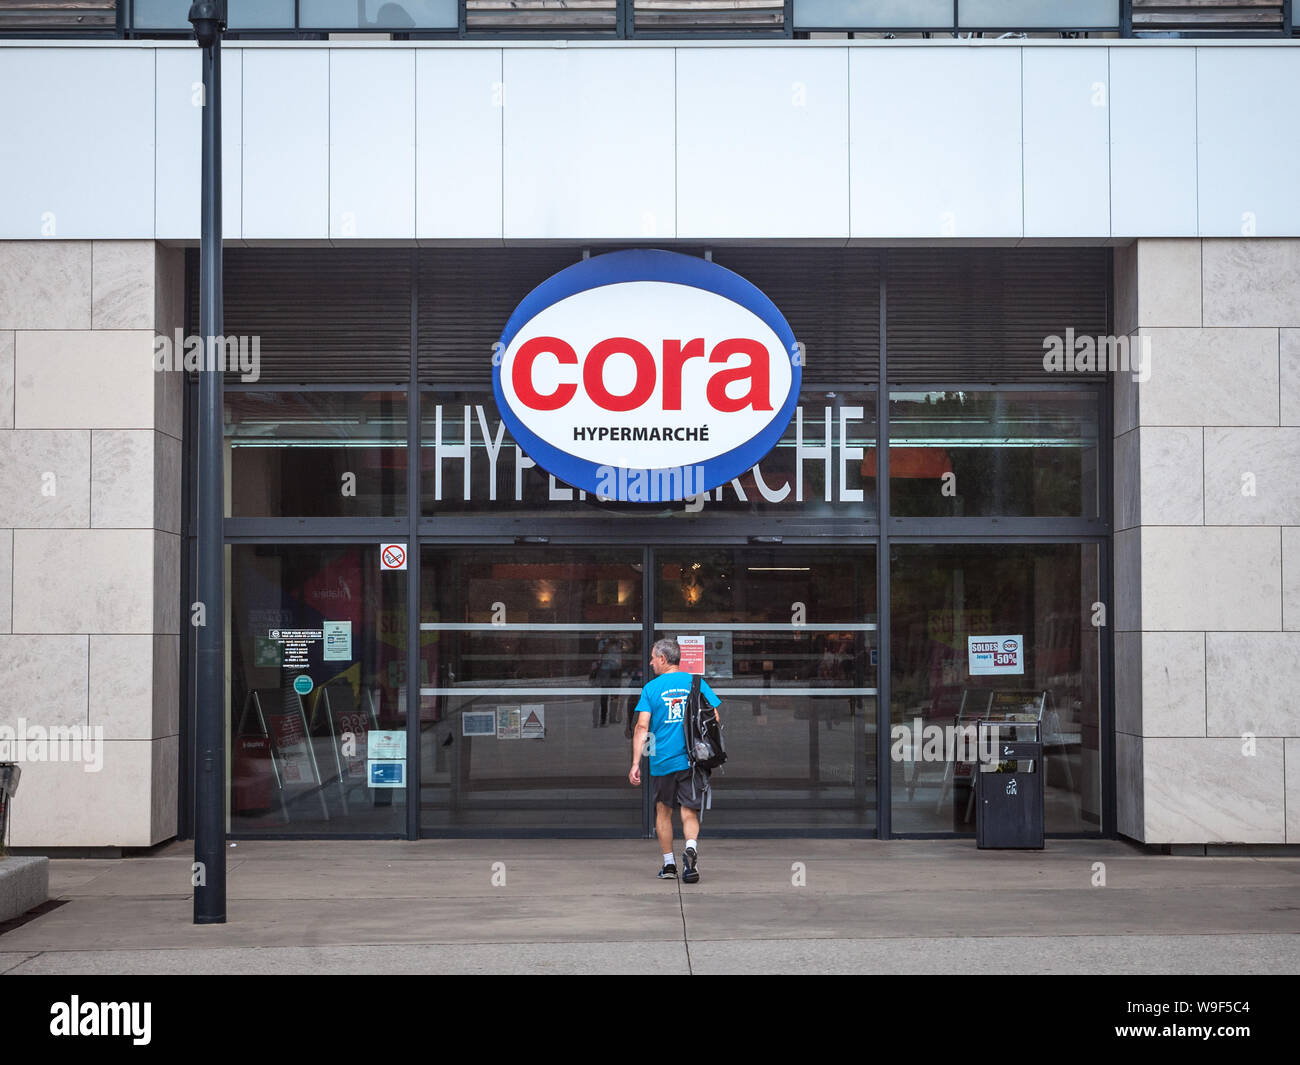 Cora hypermarket immagini e fotografie stock ad alta risoluzione - Alamy